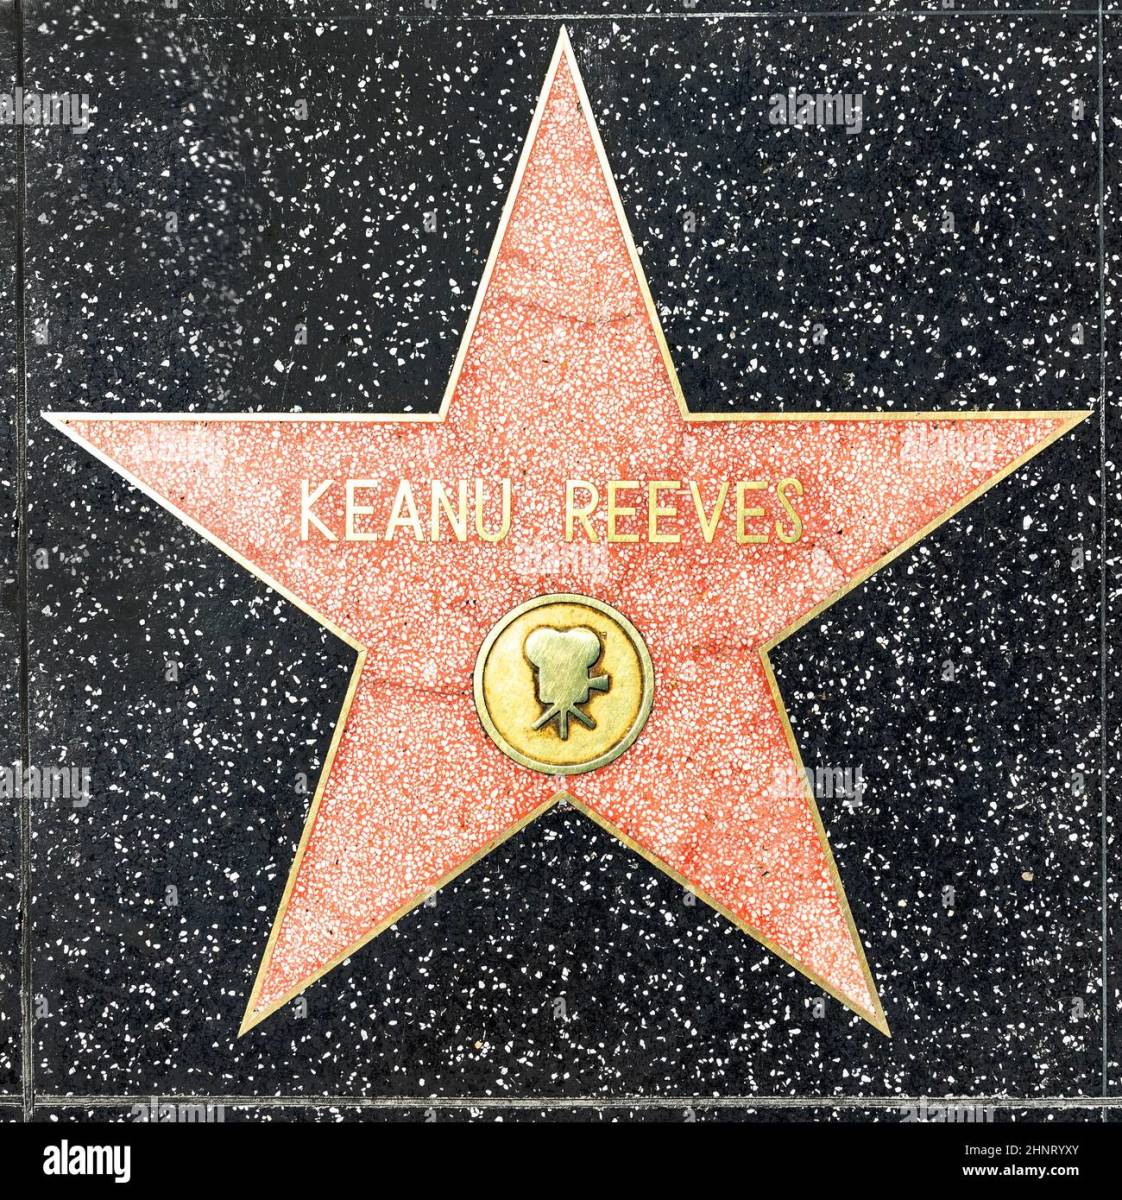 Keanu Reeves Walk of Fame Star